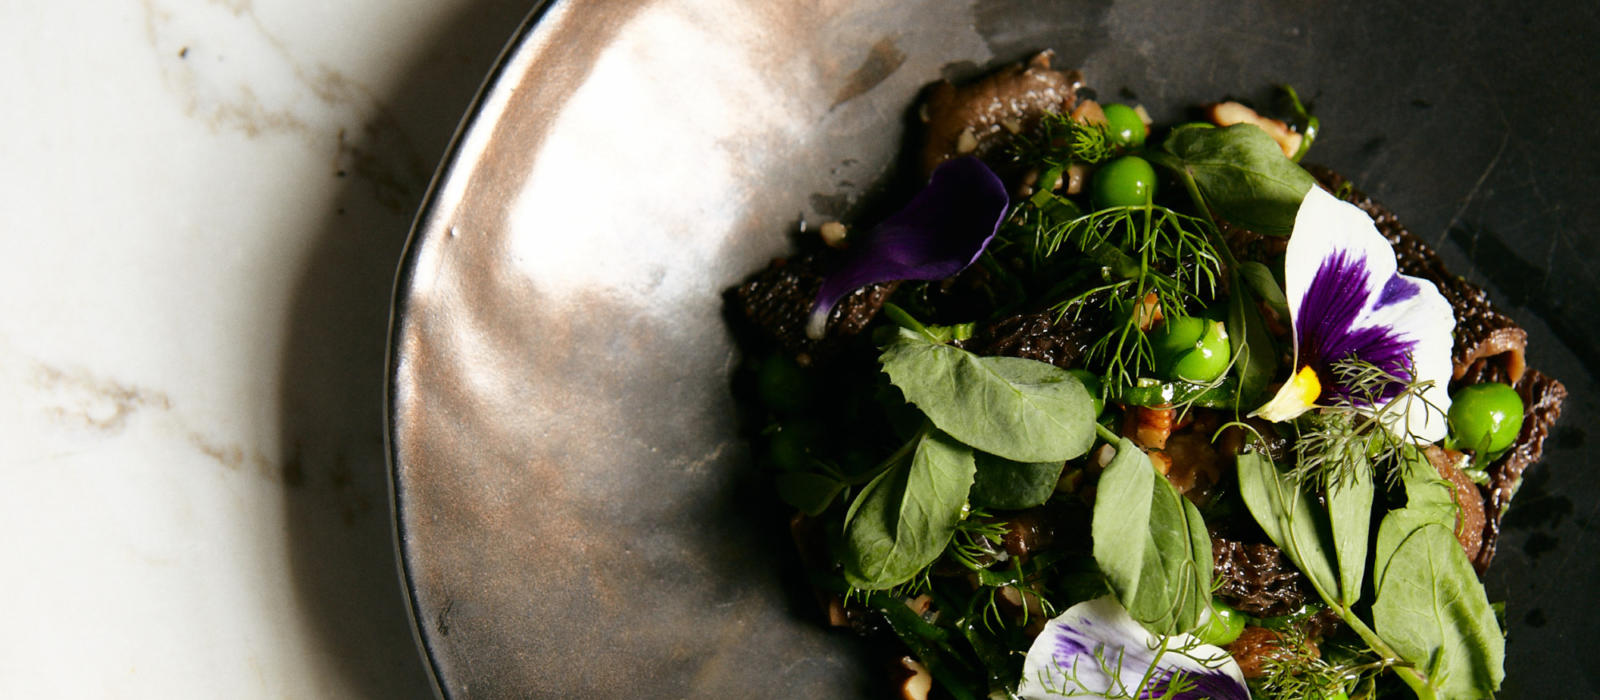 Roasted Mushroom Salad with Garden Herbs